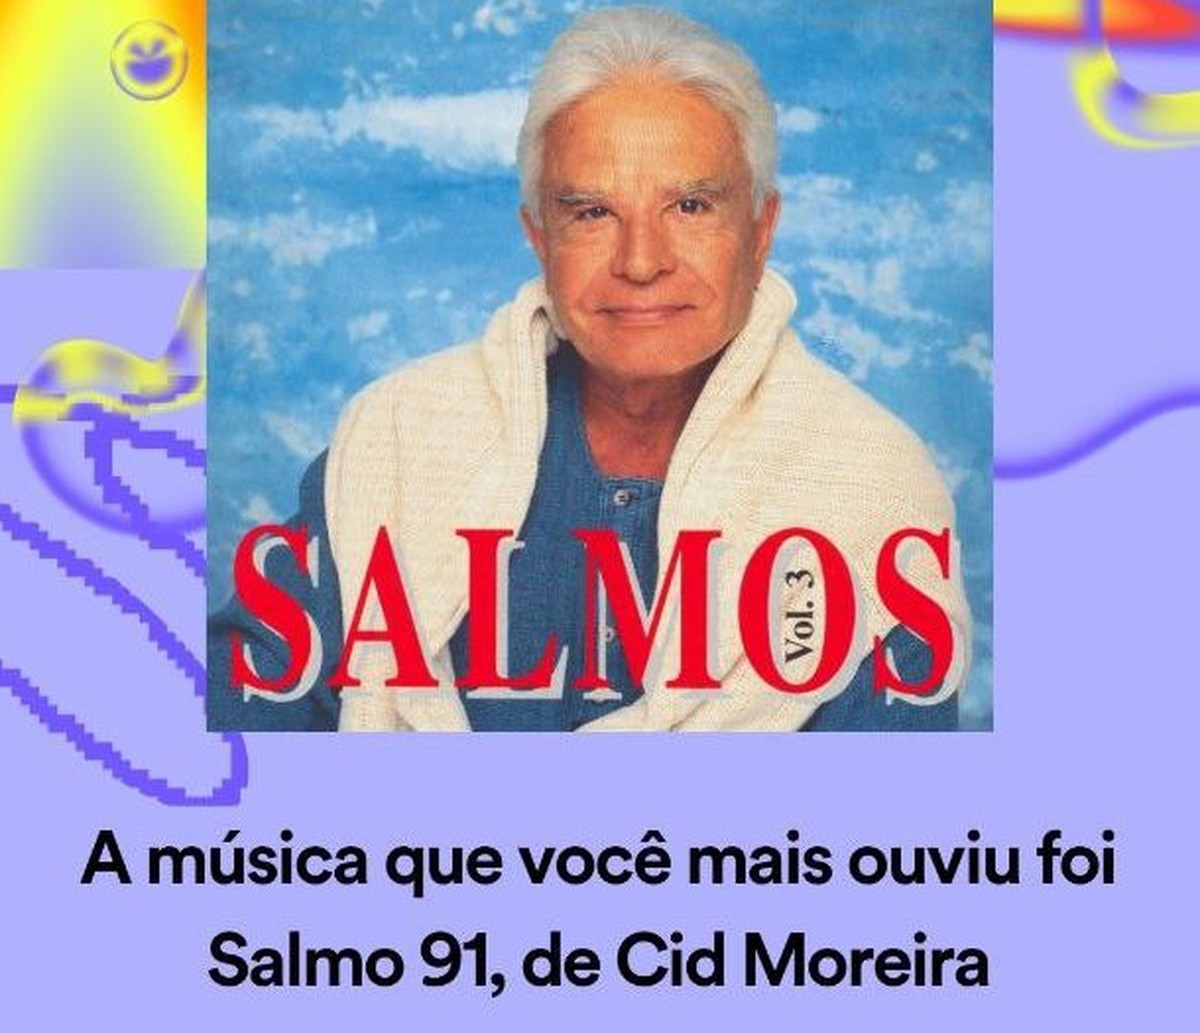 Avó ouve horas de salmos na voz de Cid Moreira, 'estraga' retrospectiva do neto no Spotify e se emociona ao receber mensagem do jornalista